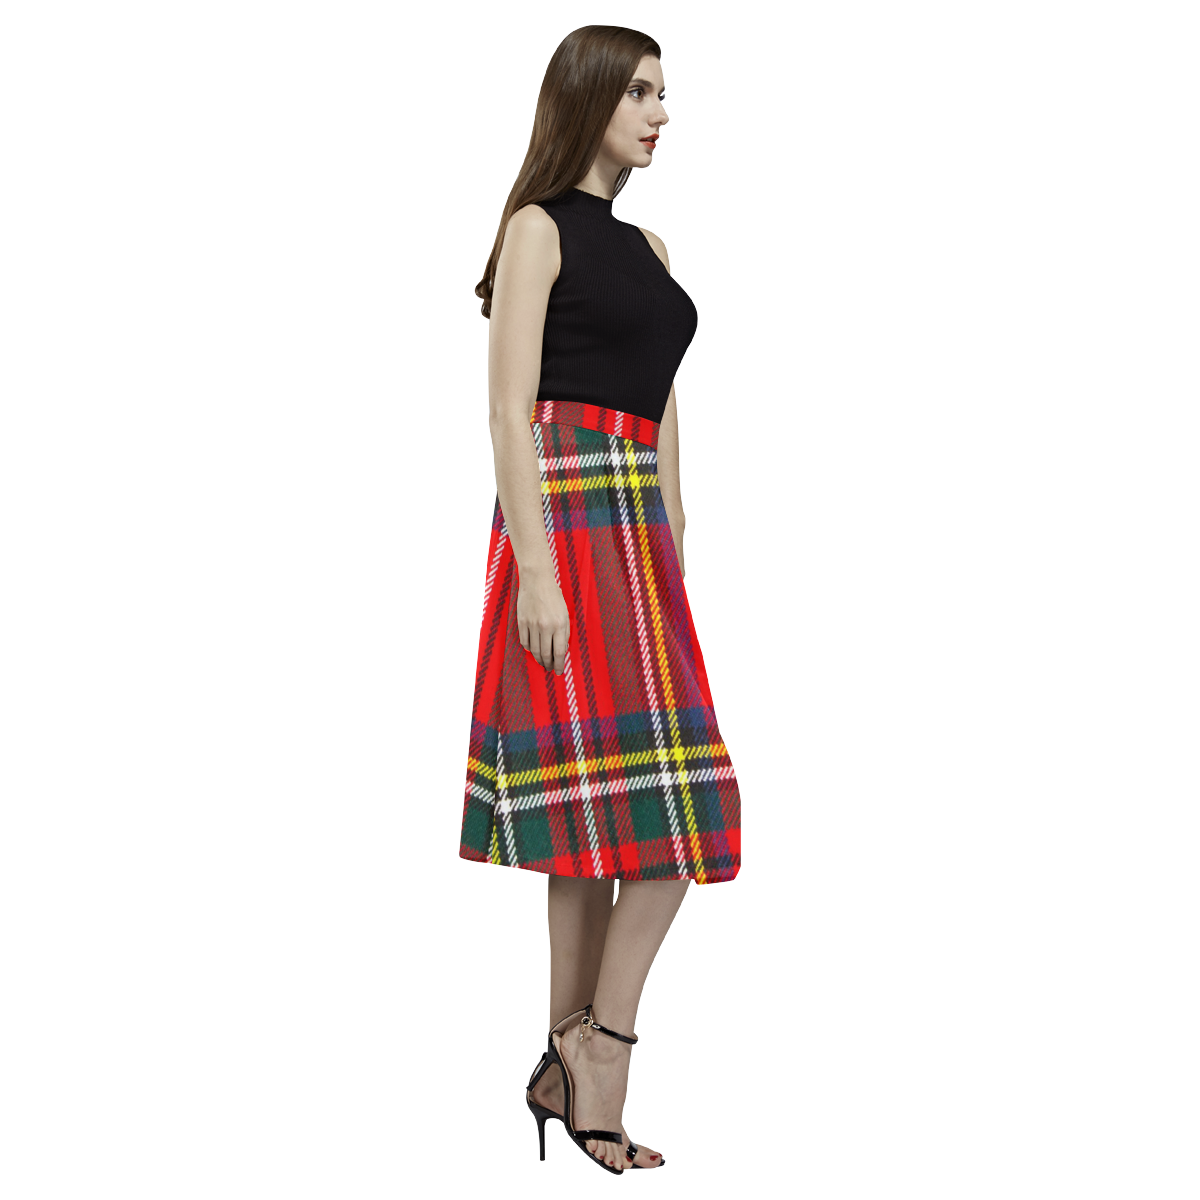 STEWART ROYAL MODERN HEAVY WEIGHT TARTAN Aoede Crepe Skirt (Model D16)